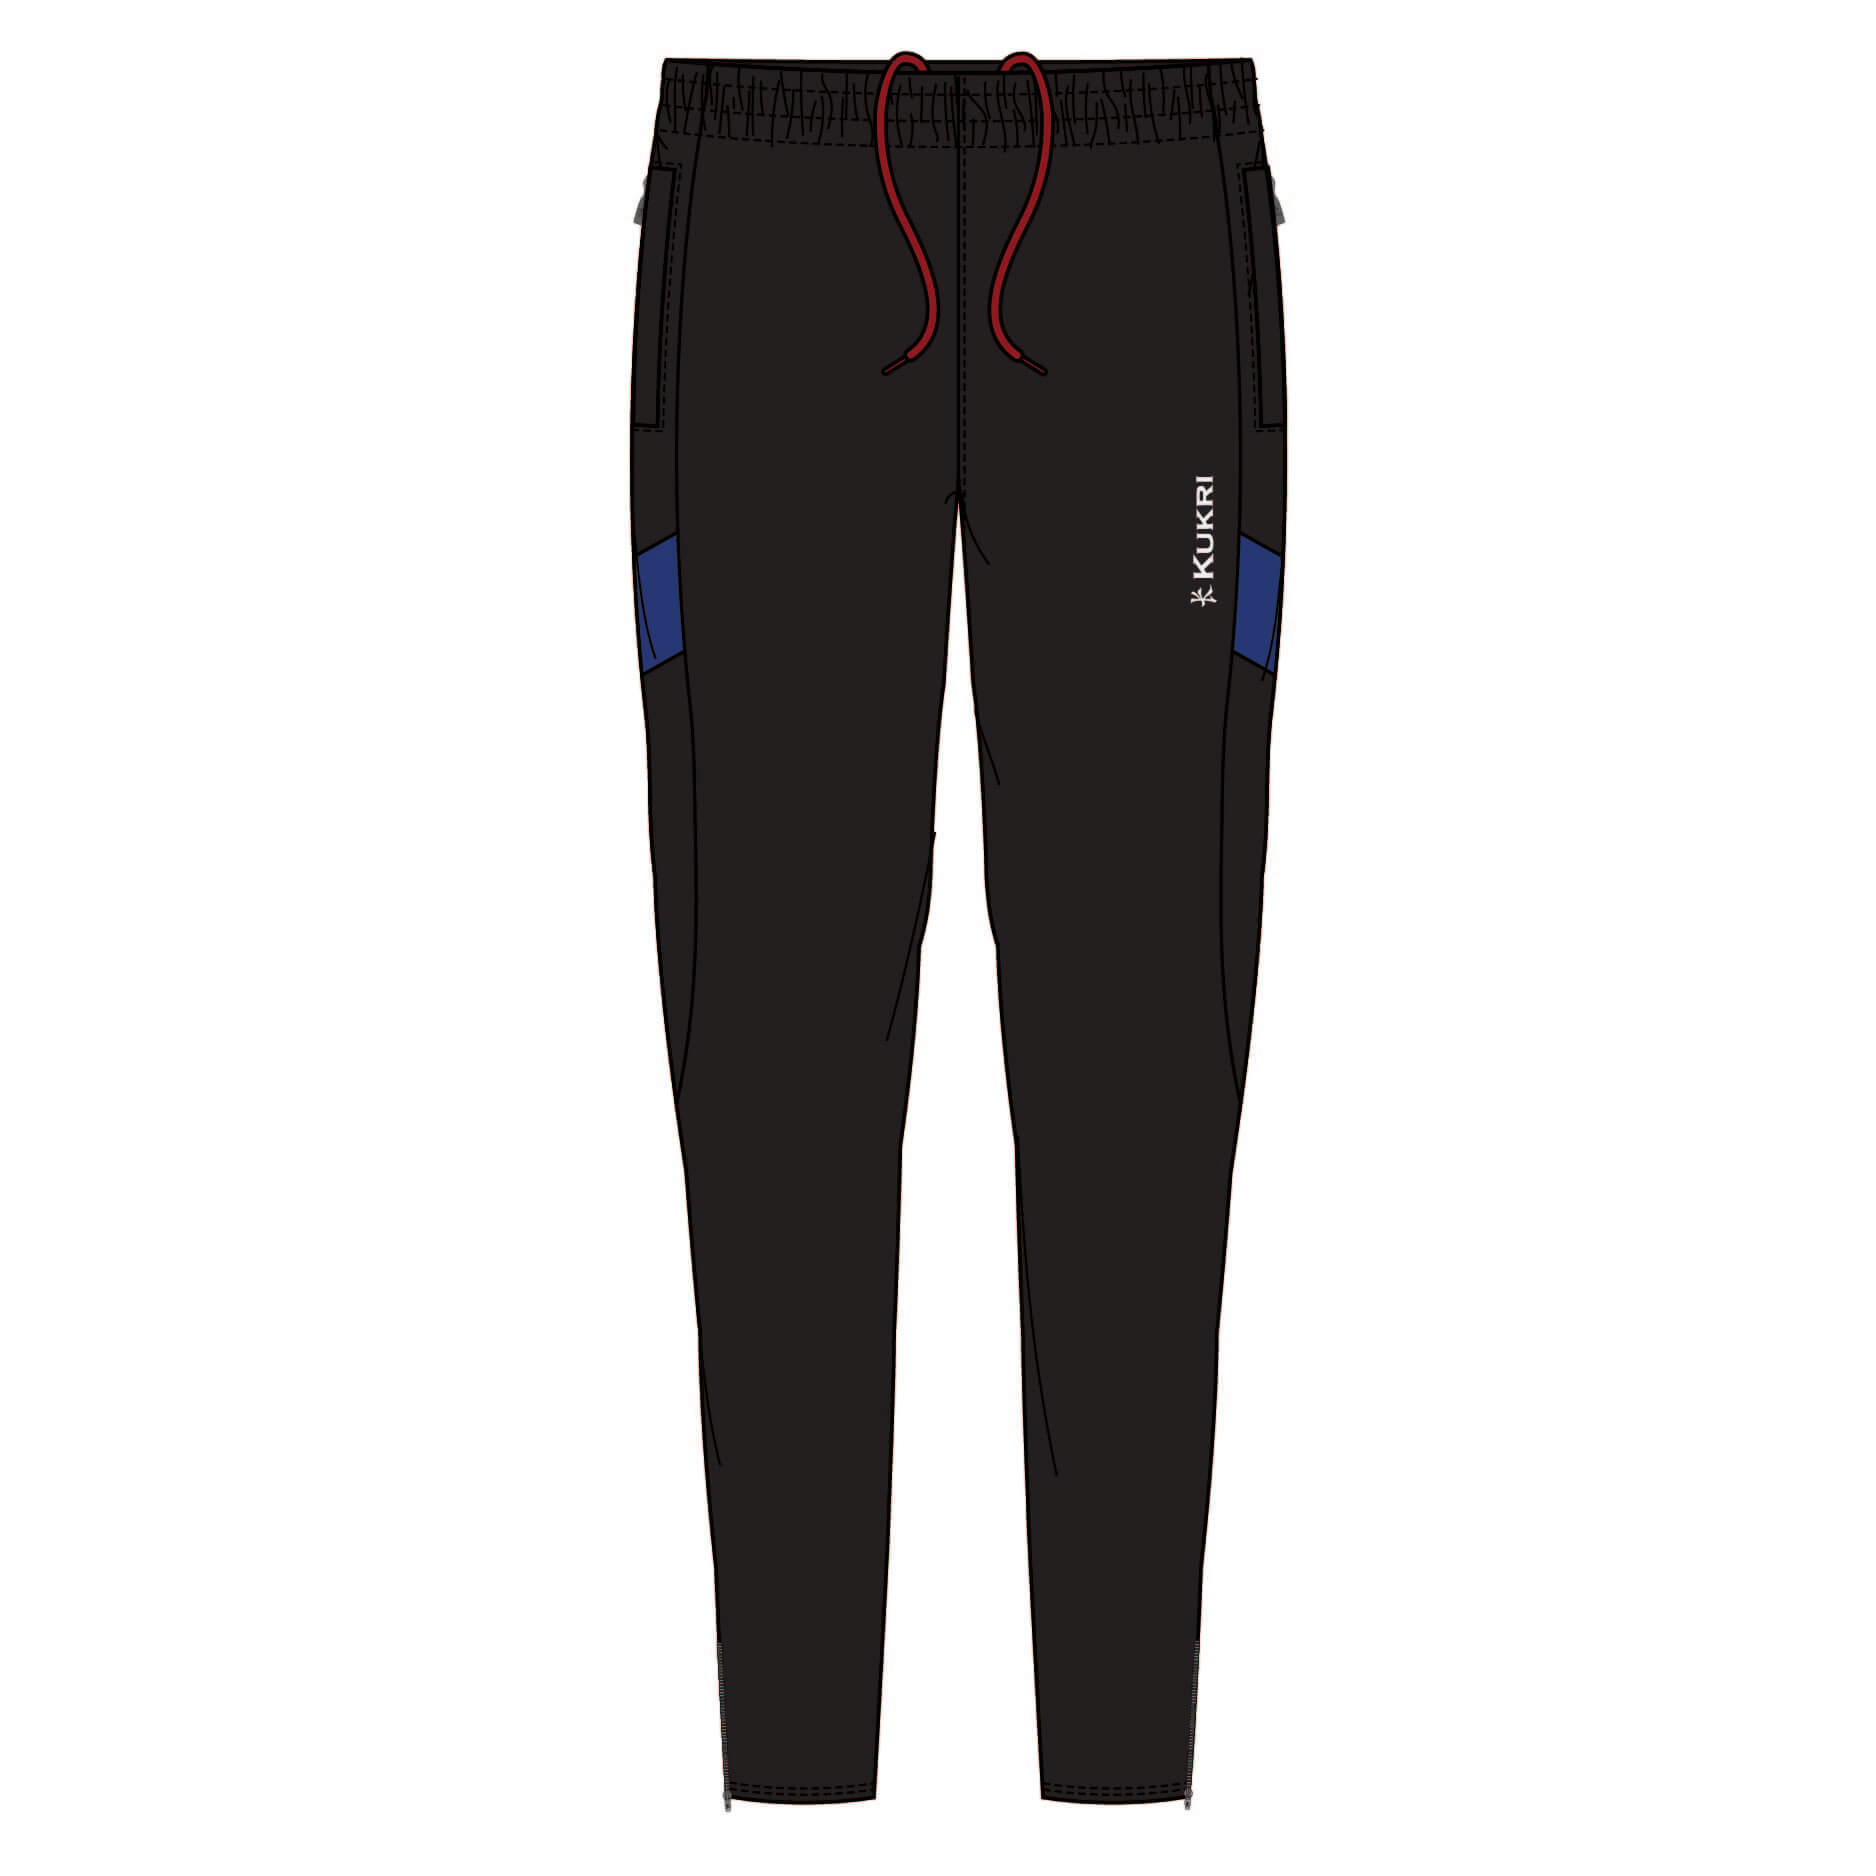 Dalriada School | Kukri Sports | Product Details - Black Tapered Pants ...